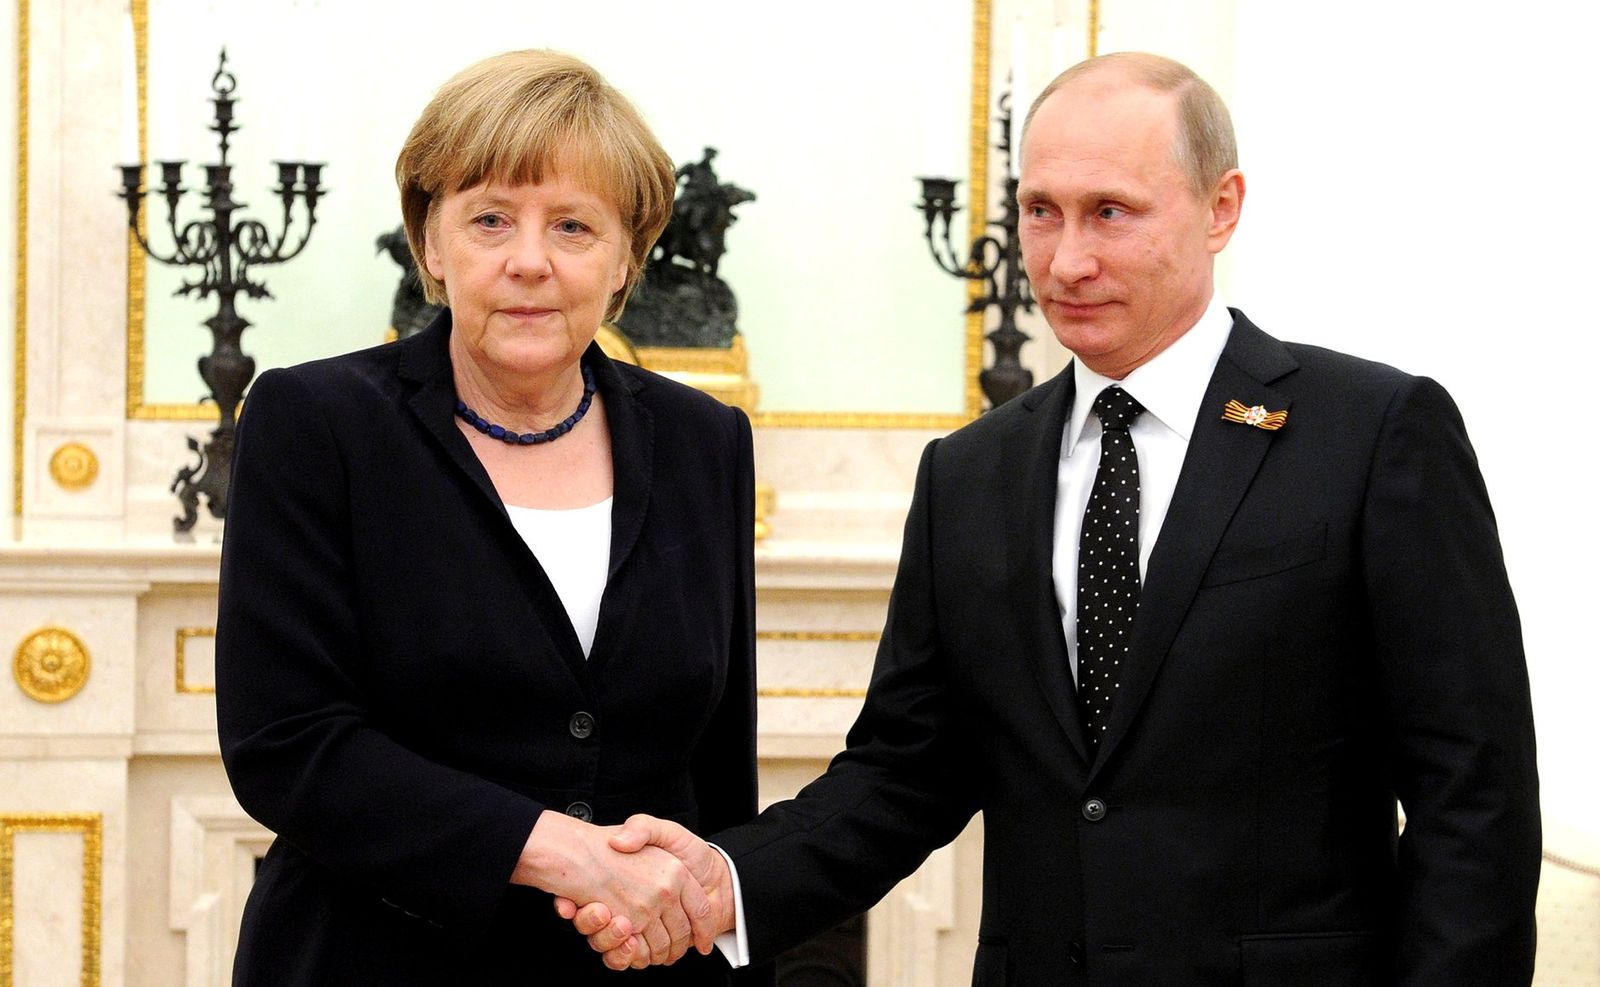 Angela Merkel Vladimir Putin - L'inattesa © Kremlin.ru da Wikimedia CC4.0 https://commons.wikimedia.org/wiki/File:Vladimir_Putin_and_Angela_Merkel_May_2015.jpg